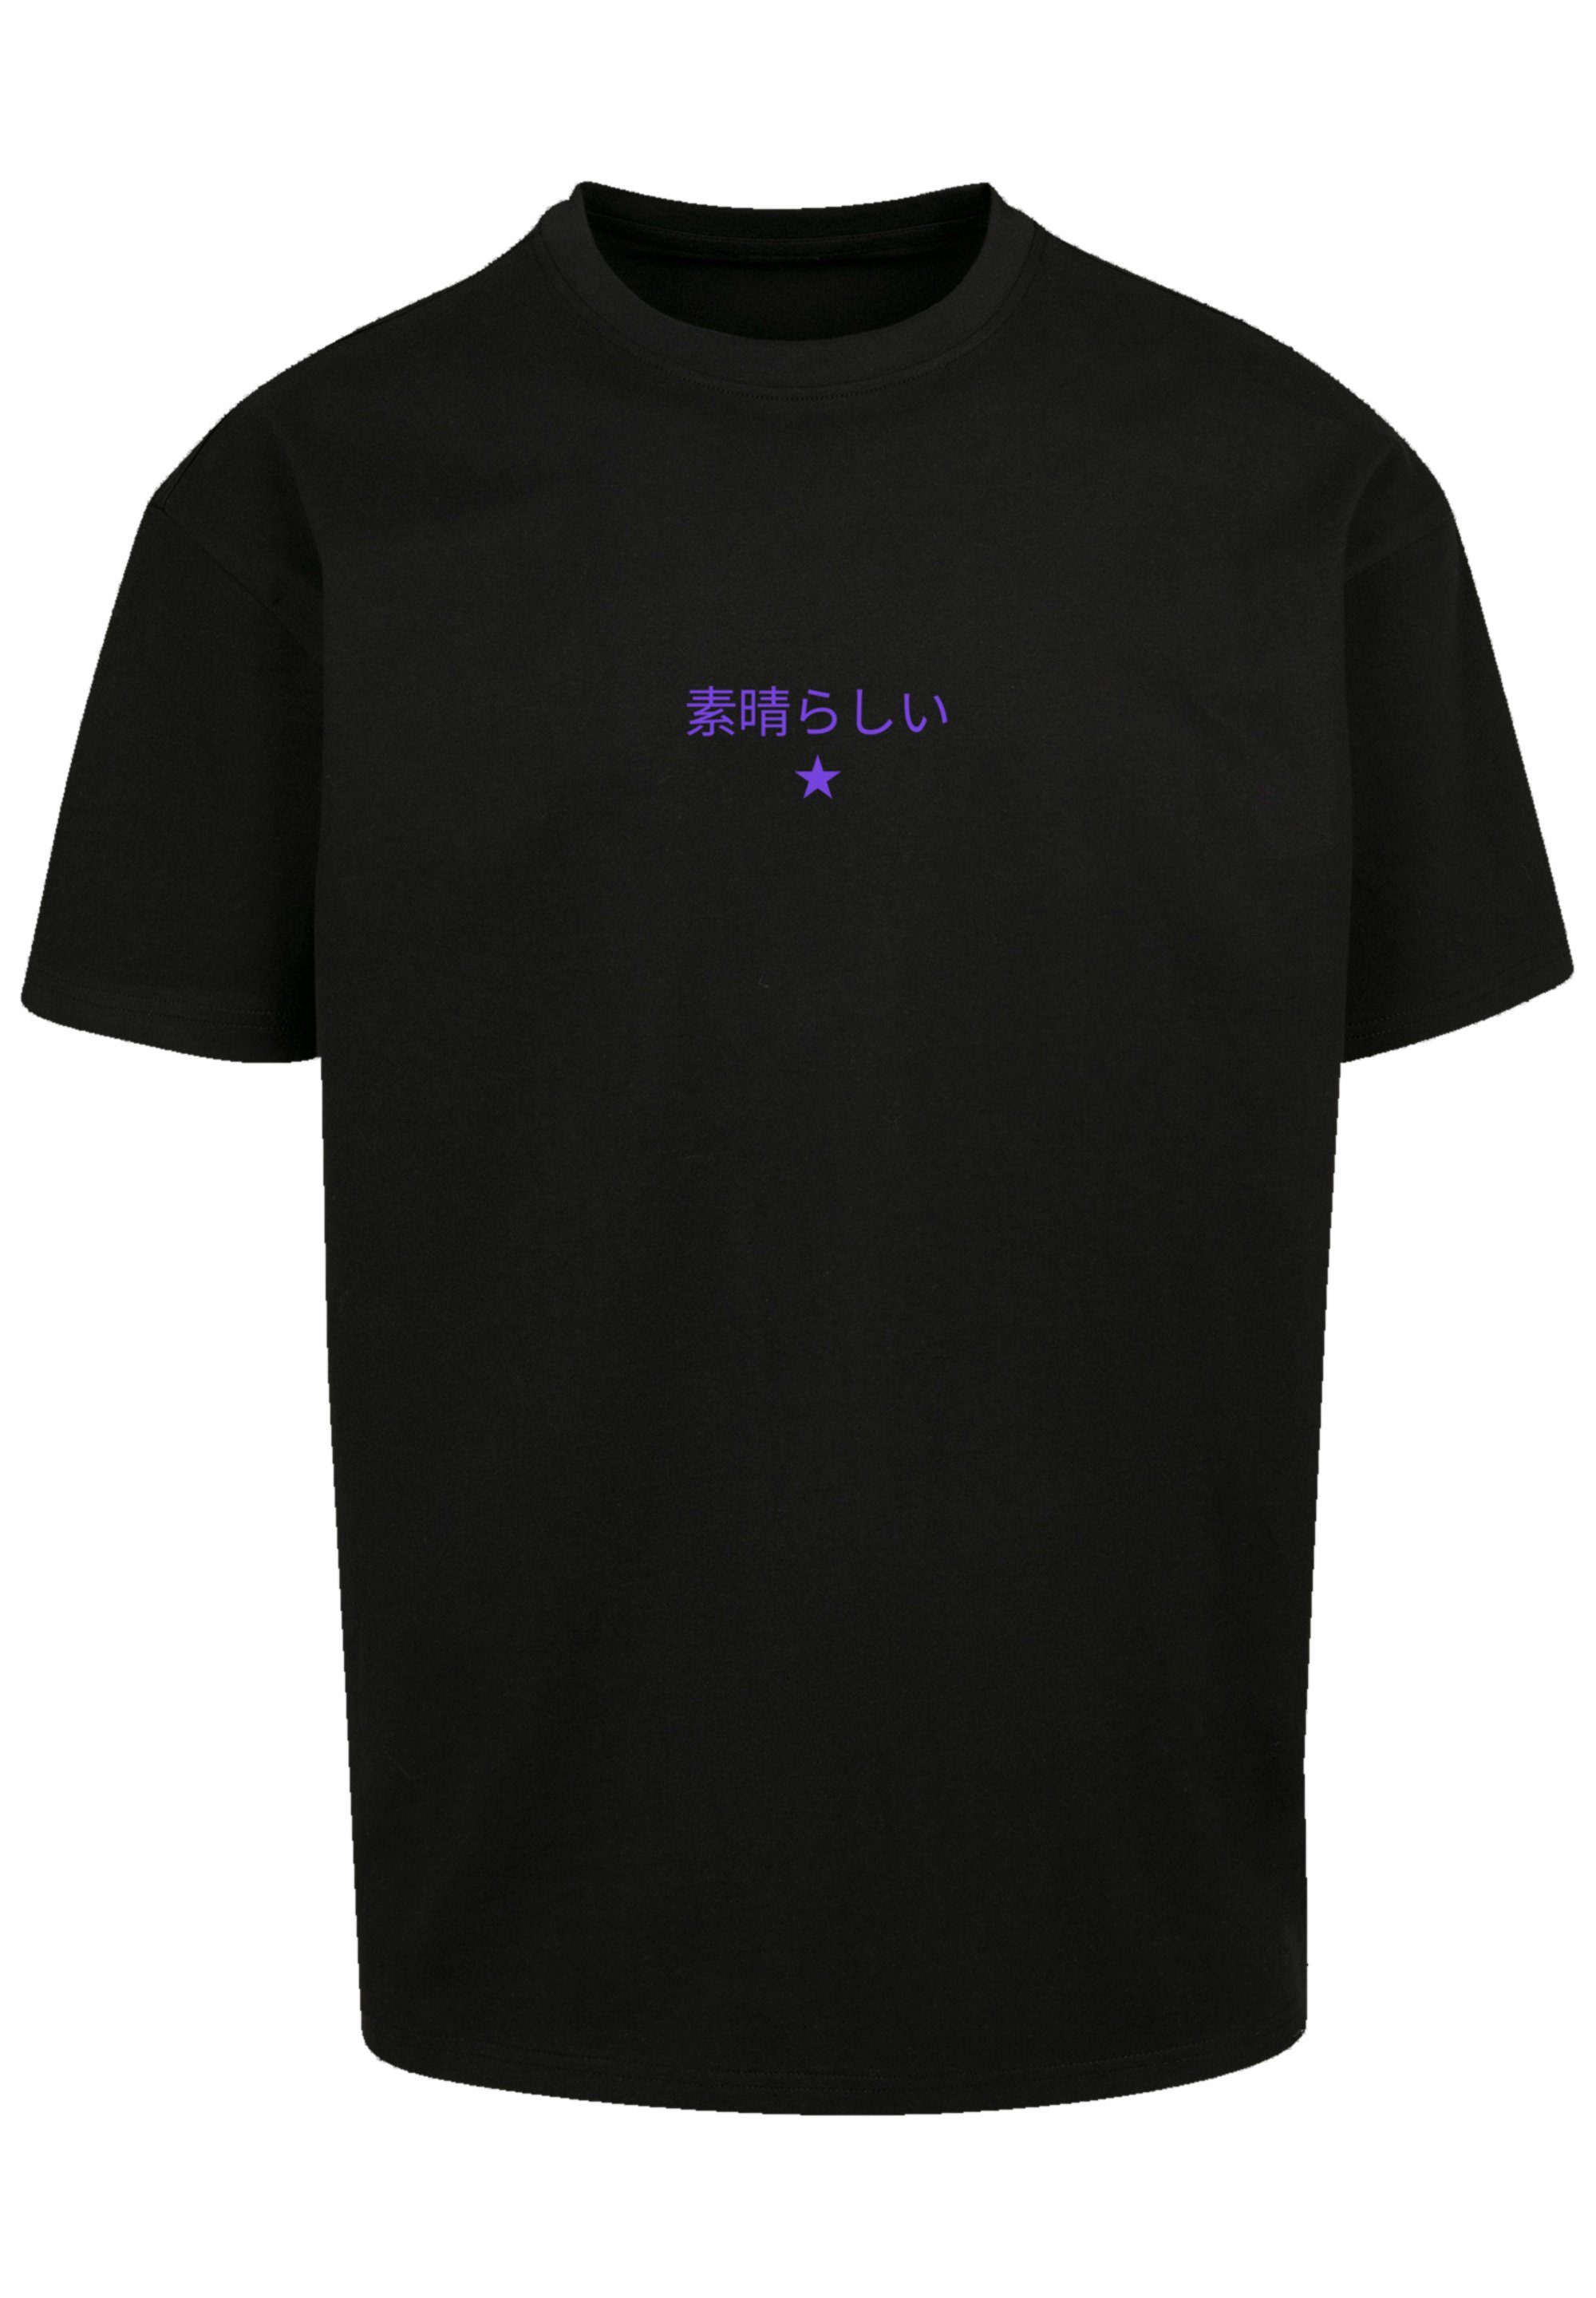 Dragon T-Shirt Drache Japan schwarz PLUS Print F4NT4STIC SIZE